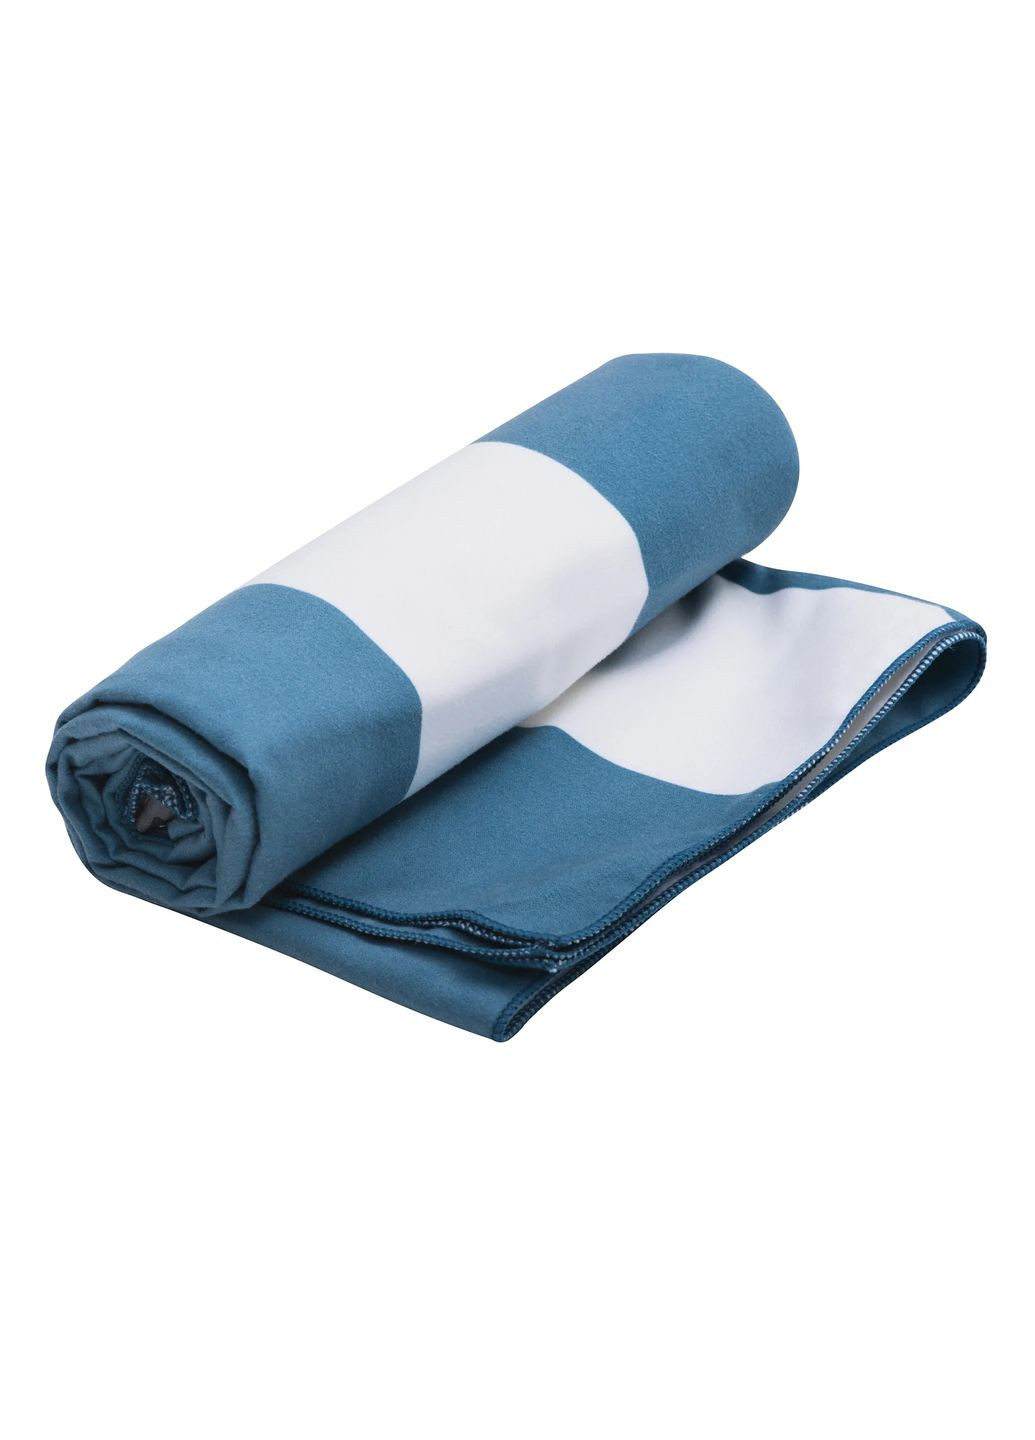 Sea To Summit полотенце drylite towel xxl синийбелый комбинированный производство -